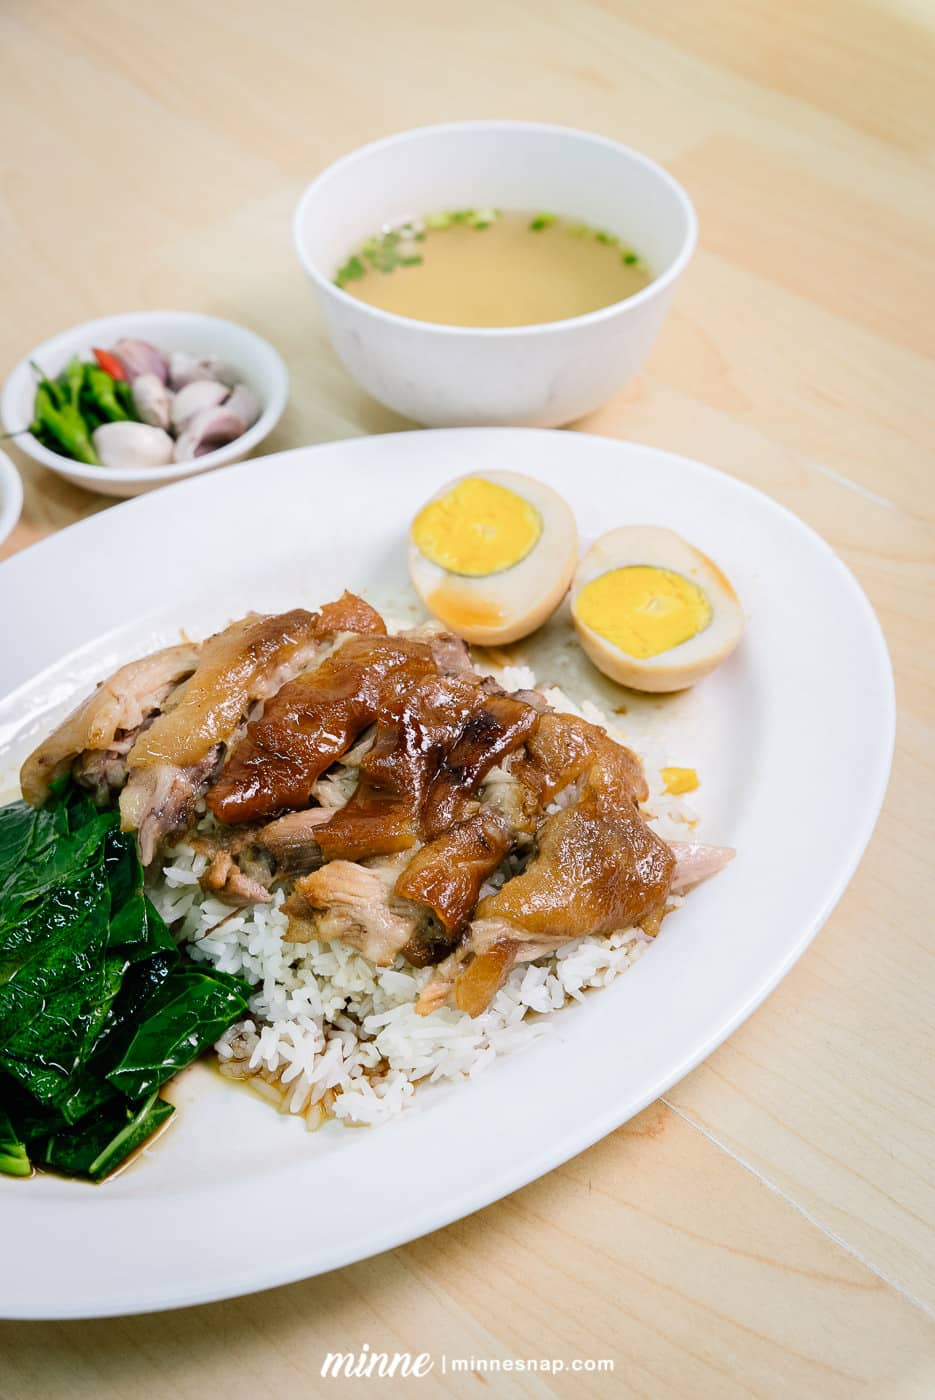 ข้าวมันไก่ไหหลำบางศรีเมือง - Hainanese chicken rice